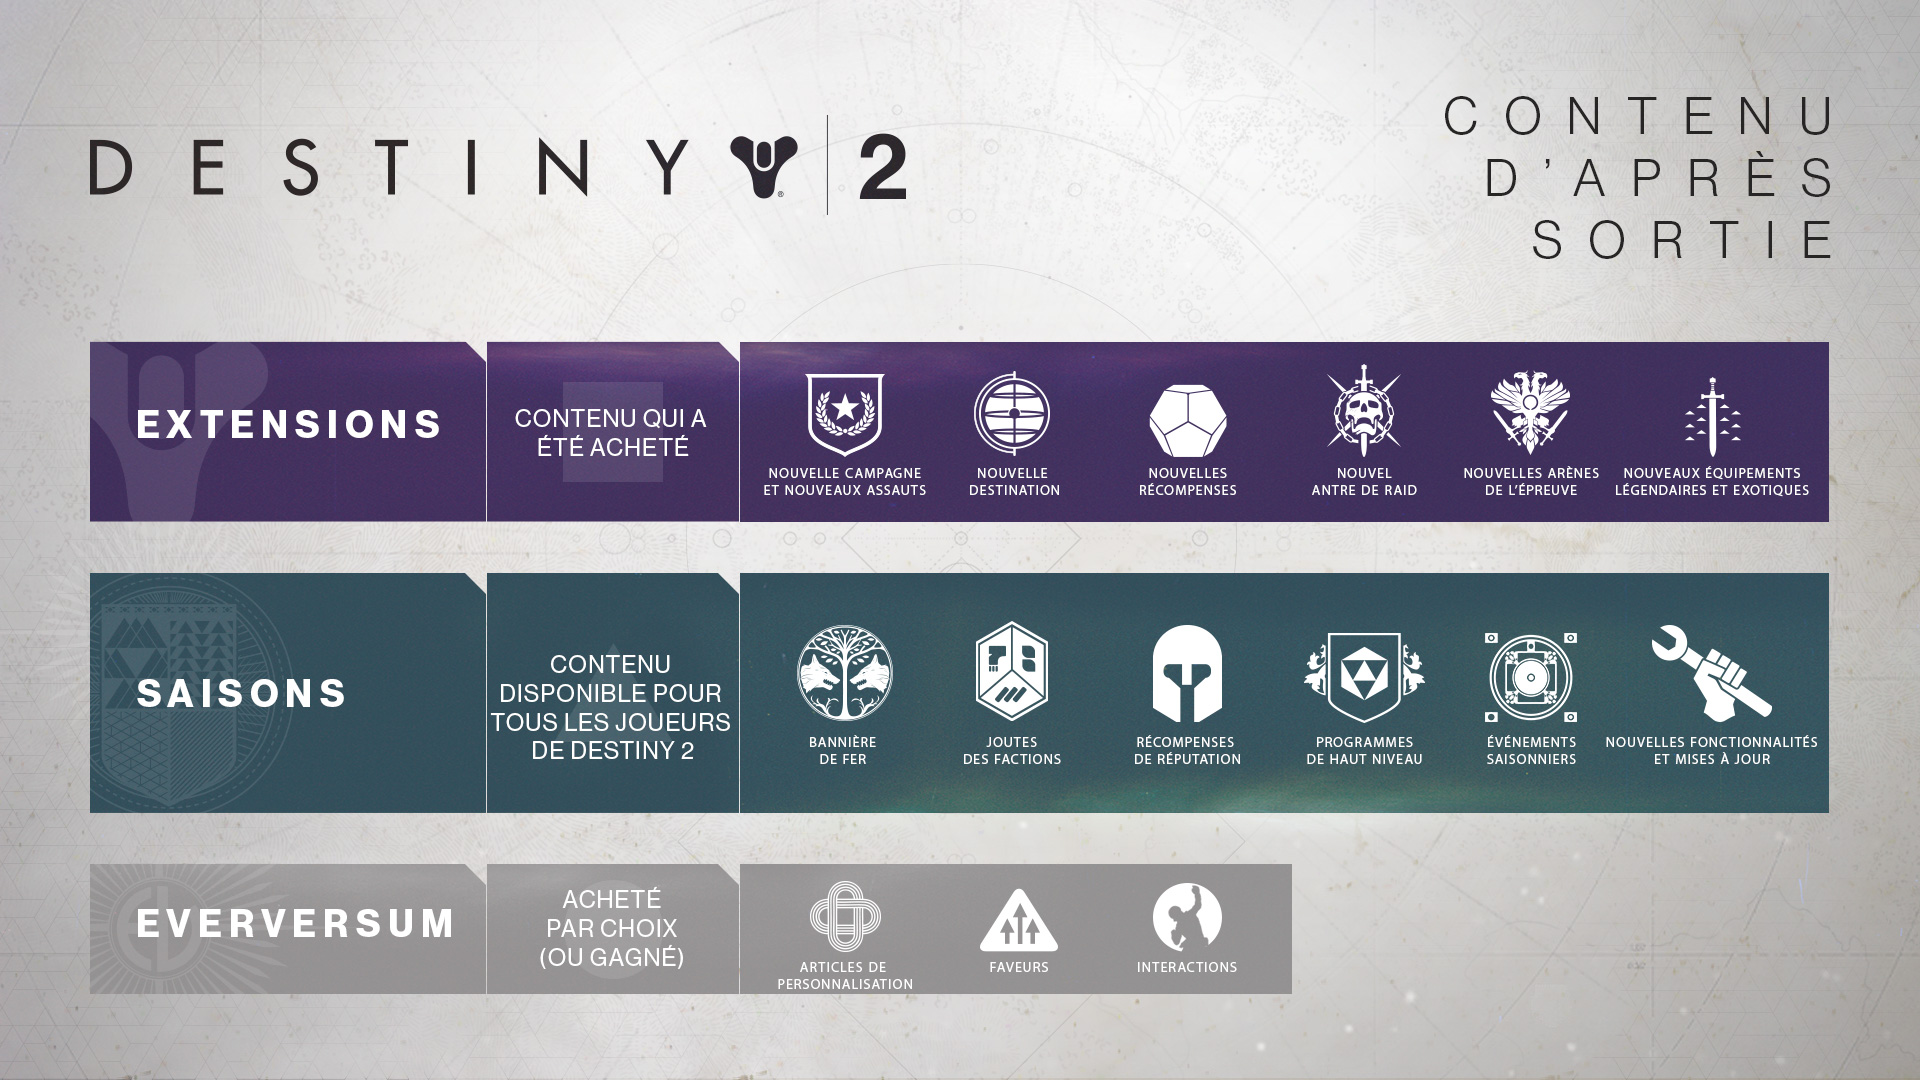 Catégories des contenus d'après sortie de Destiny 2